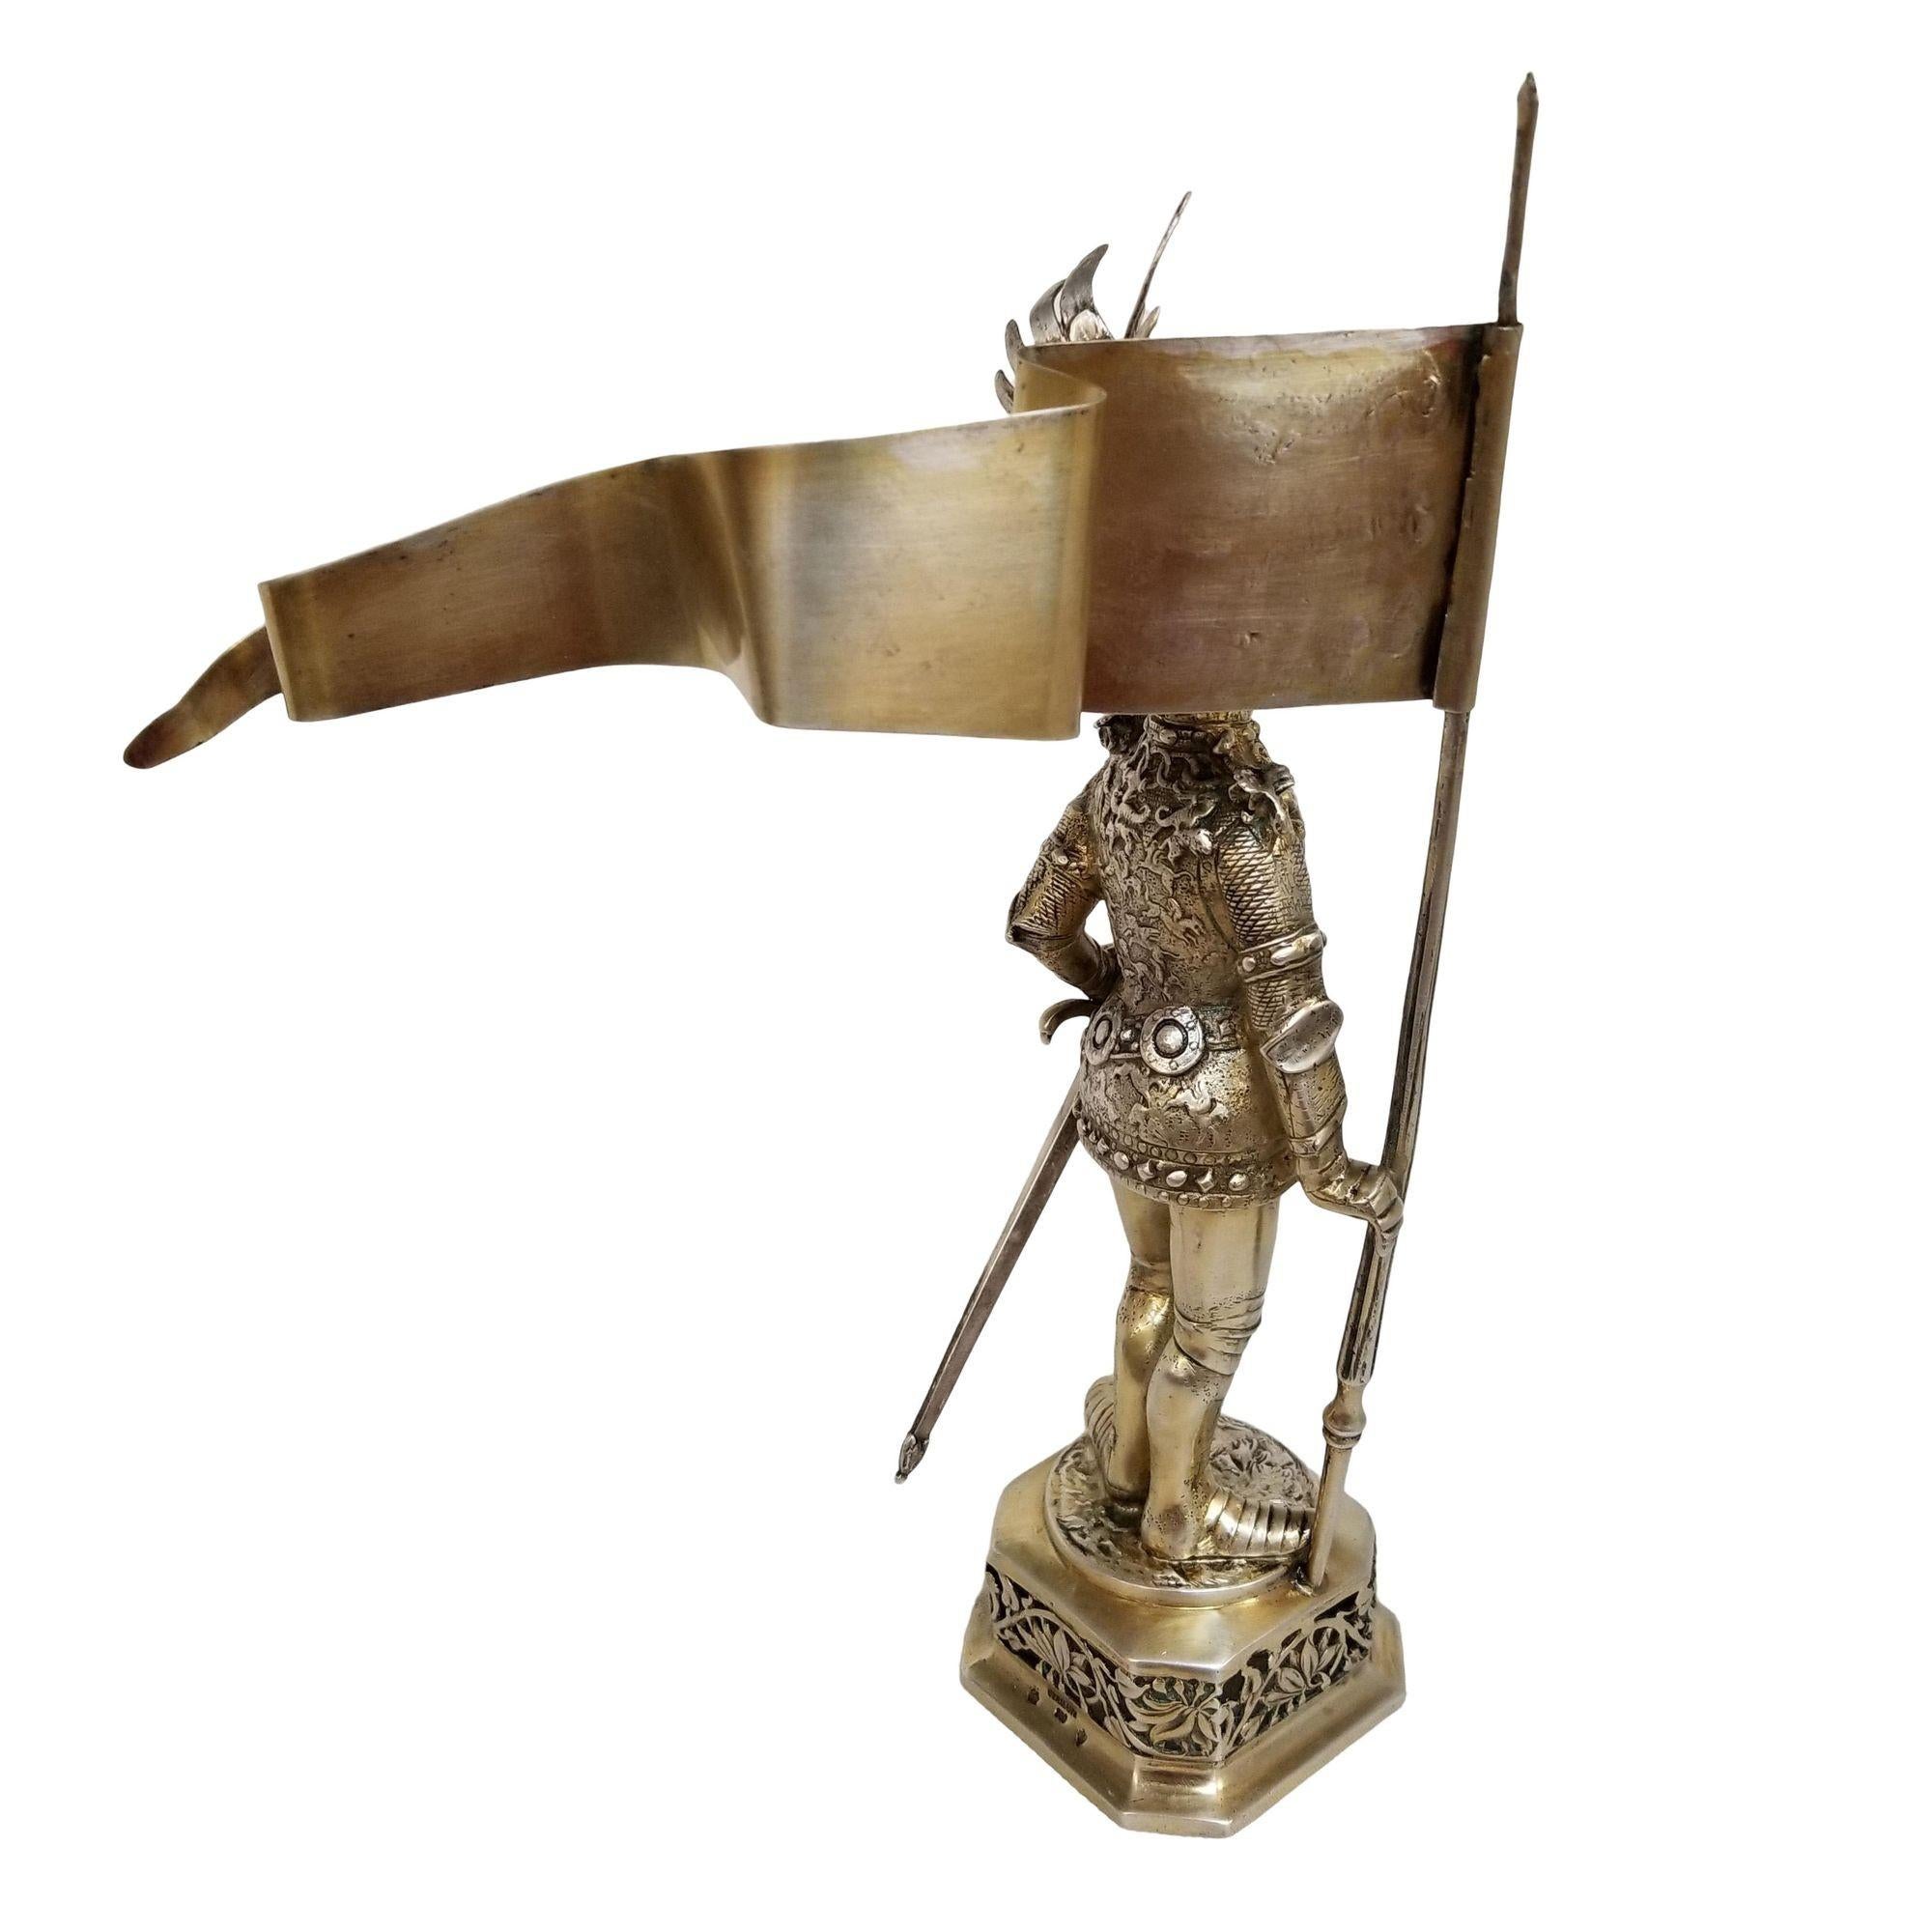 Cette figurine de chevalier en argent sterling datant du XIXe siècle est un chef-d'œuvre captivant. Vêtus d'une armure médiévale complète avec un bâton et un drapeau, les visières mobiles et les armoiries gravées de manière complexe témoignent d'un